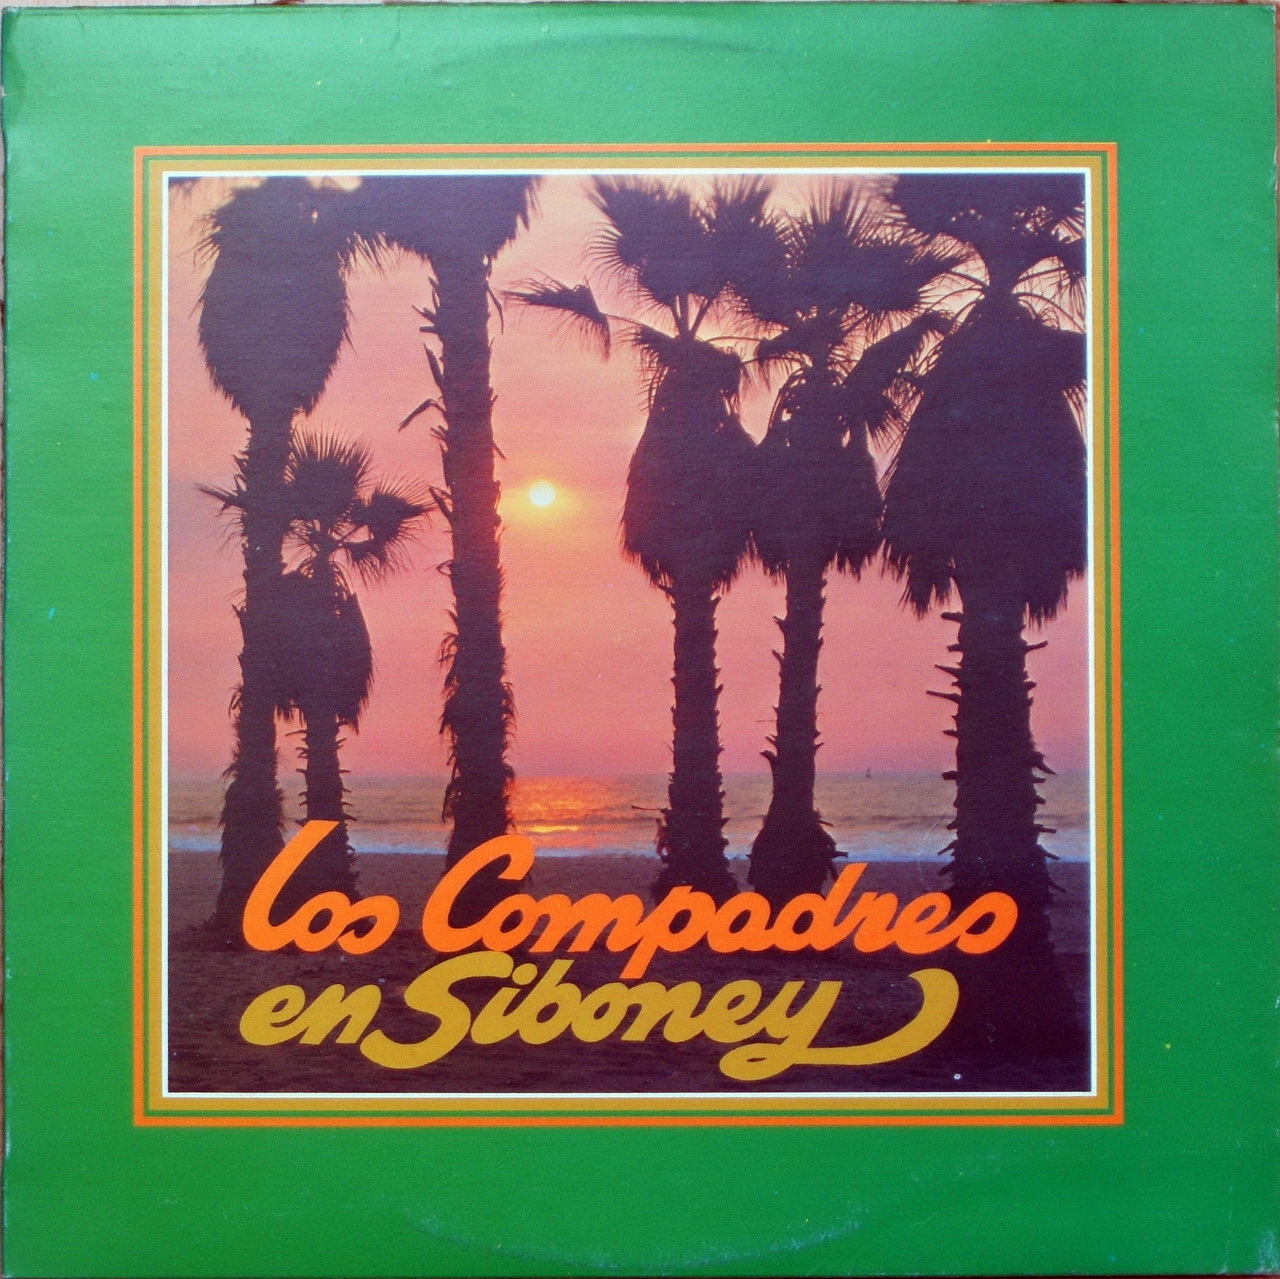  duo los compadres - en siboney (1972) Lps+99735